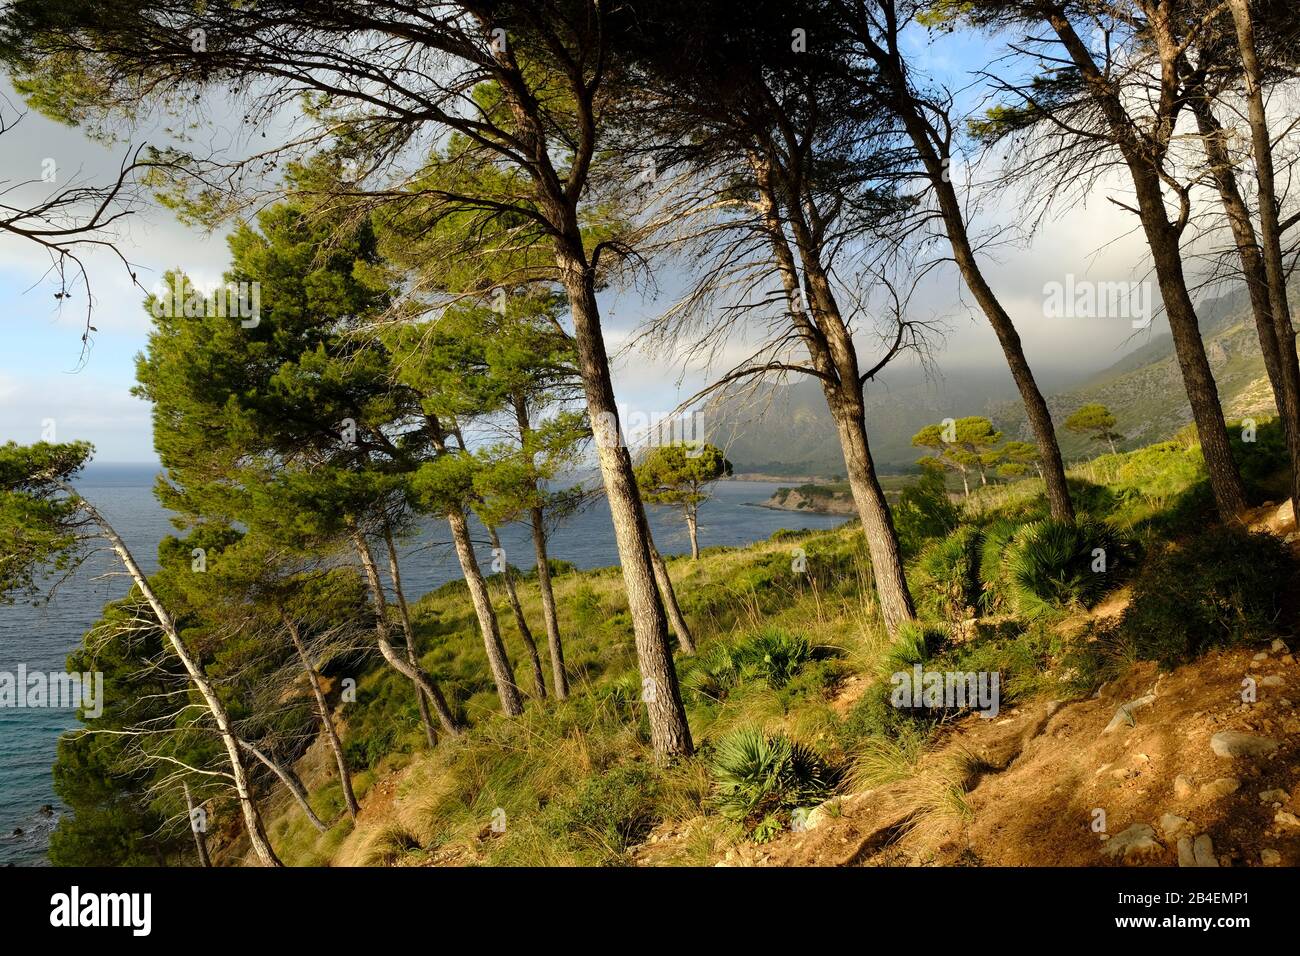 Paysage et falaises près de Betlem sur la péninsule de Llevant dans le parc naturel de Llevant, Majorque, Iles Baléares, Espagne Banque D'Images